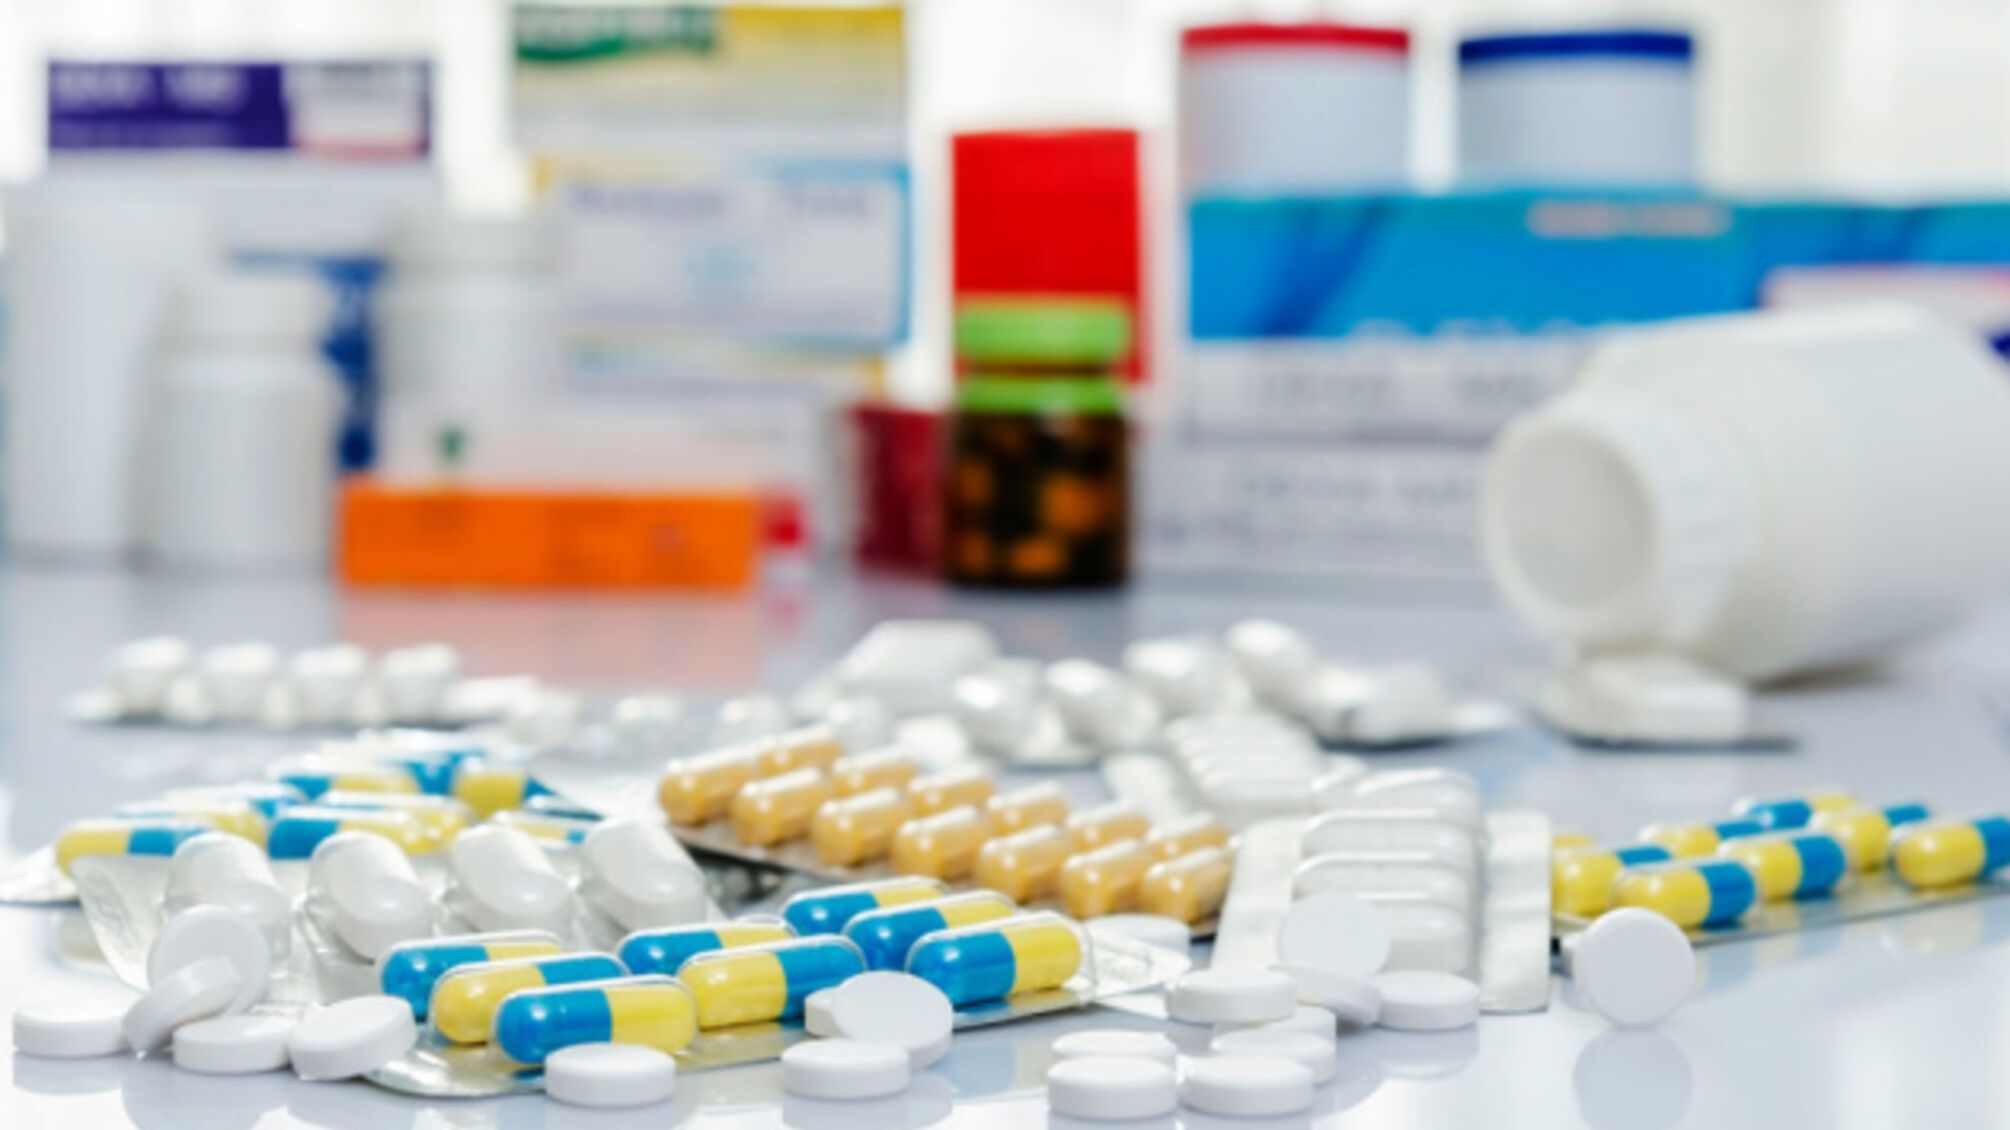 На Одещині медики займались закупівлею препаратів за завищеними цінами: збиток склав майже 2,5 млн грн